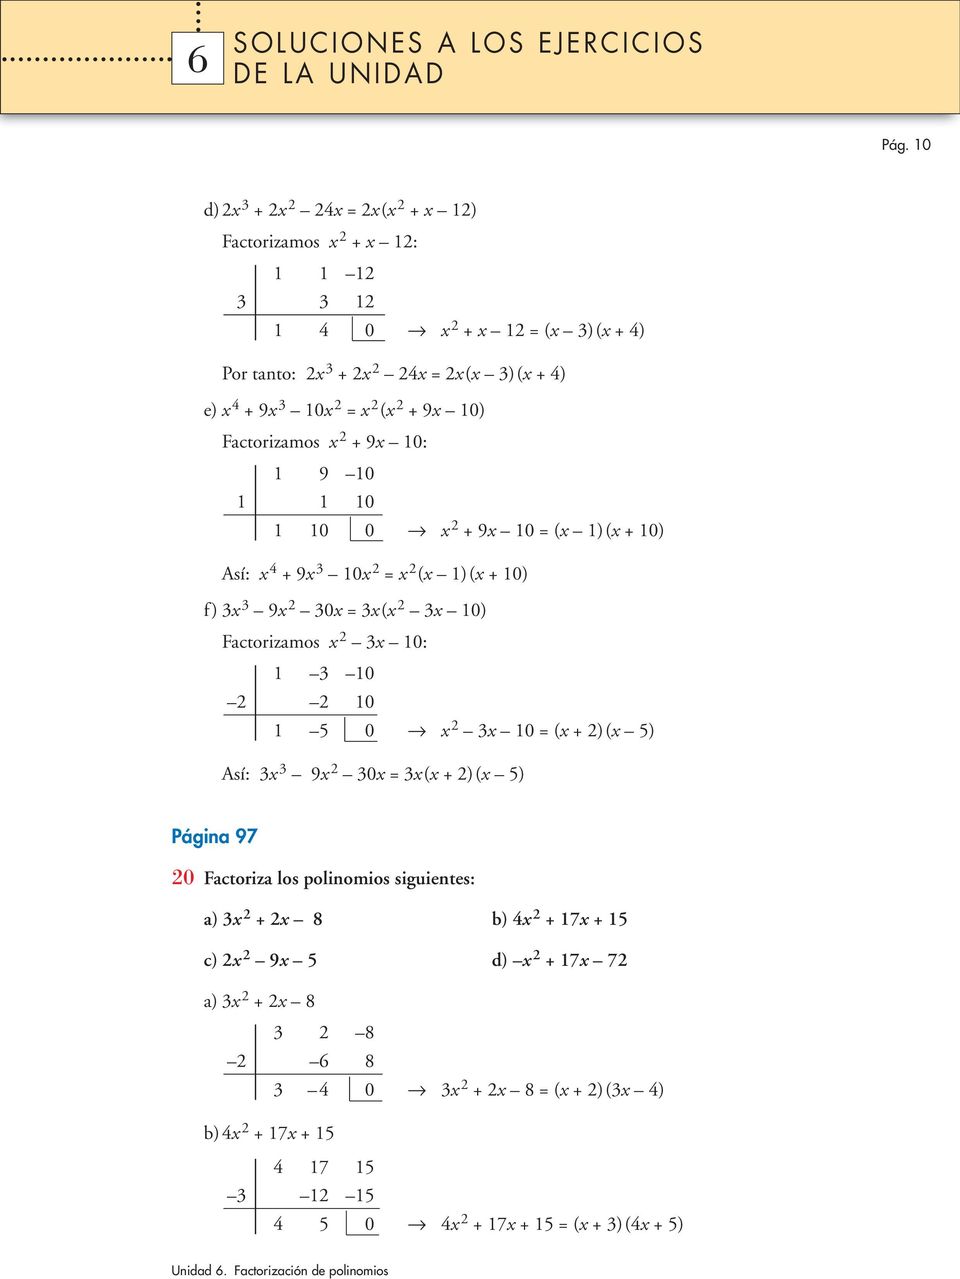 Factorizamos x 2 3x 10: 1 3 10 2 2 10 1 5 0 x 2 3x 10 = (x +2)(x 5) Así: 3x 3 9x 2 30x = 3x(x +2)(x 5) Página 97 20 Factoriza los polinomios siguientes: a) 3x 2 + 2x 8 b) 4x